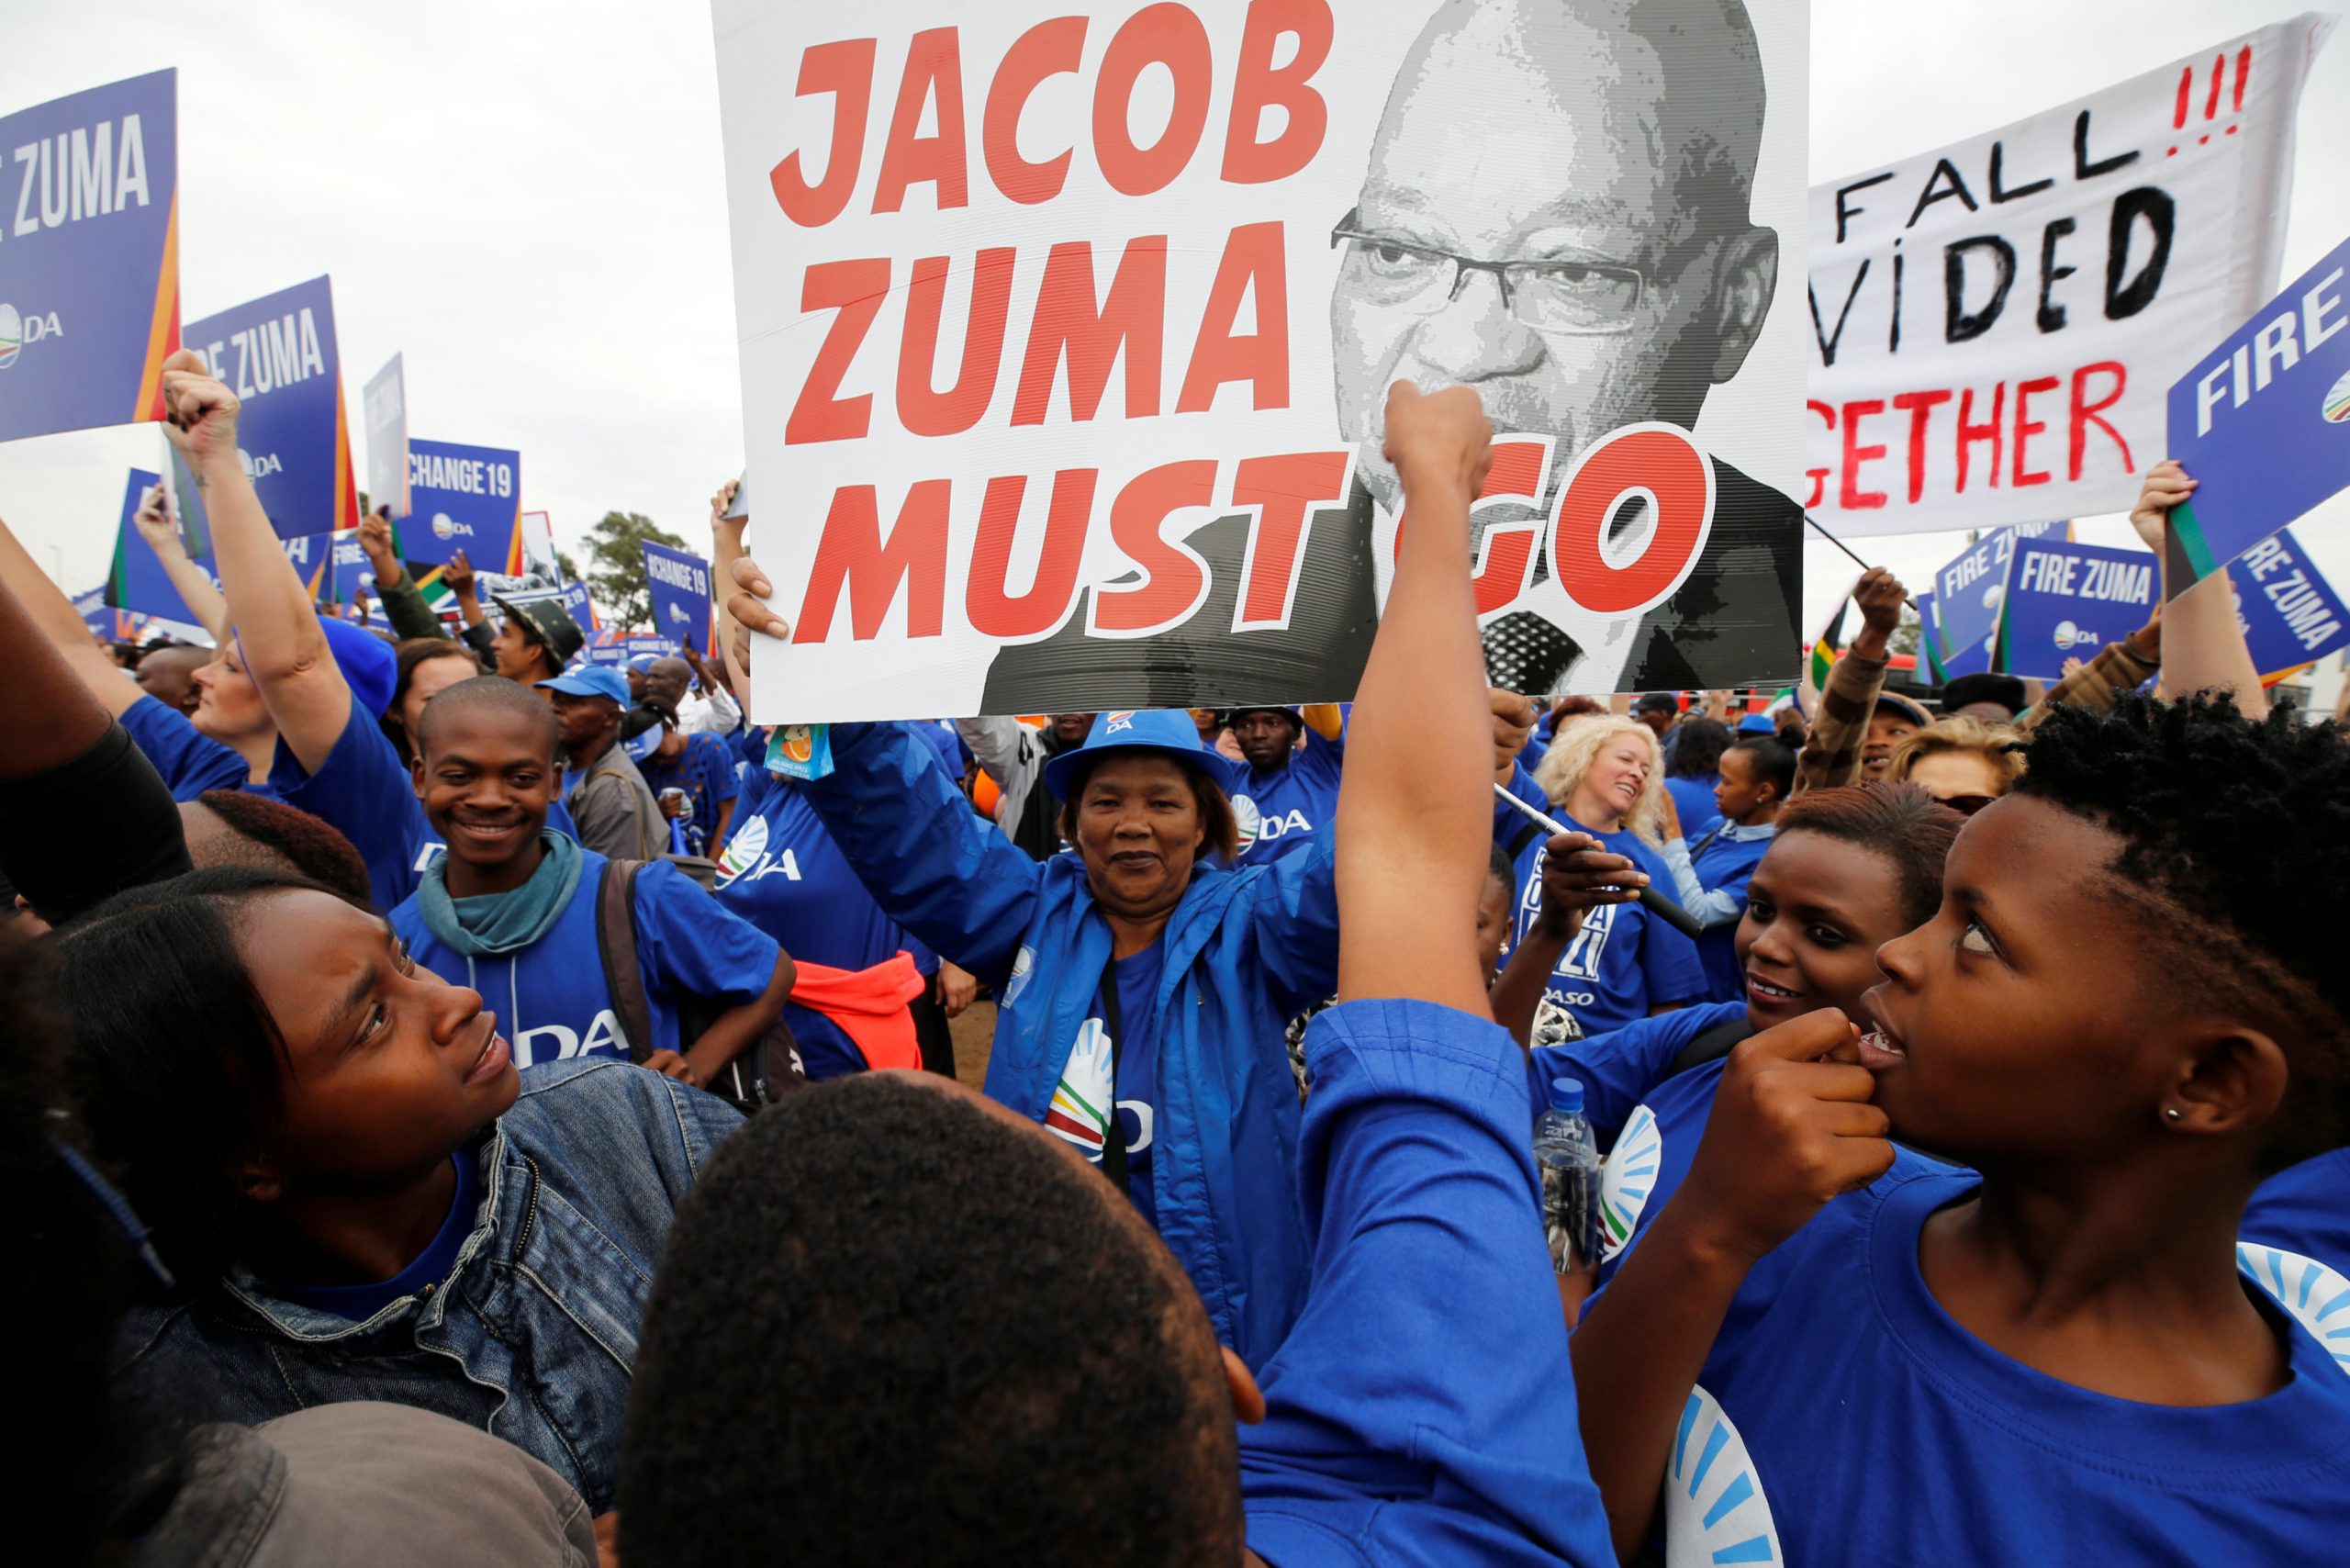 دور الأحزاب السياسية في عملية التحول الديمقراطي في جنوب أفريقيا منذ عام 1994